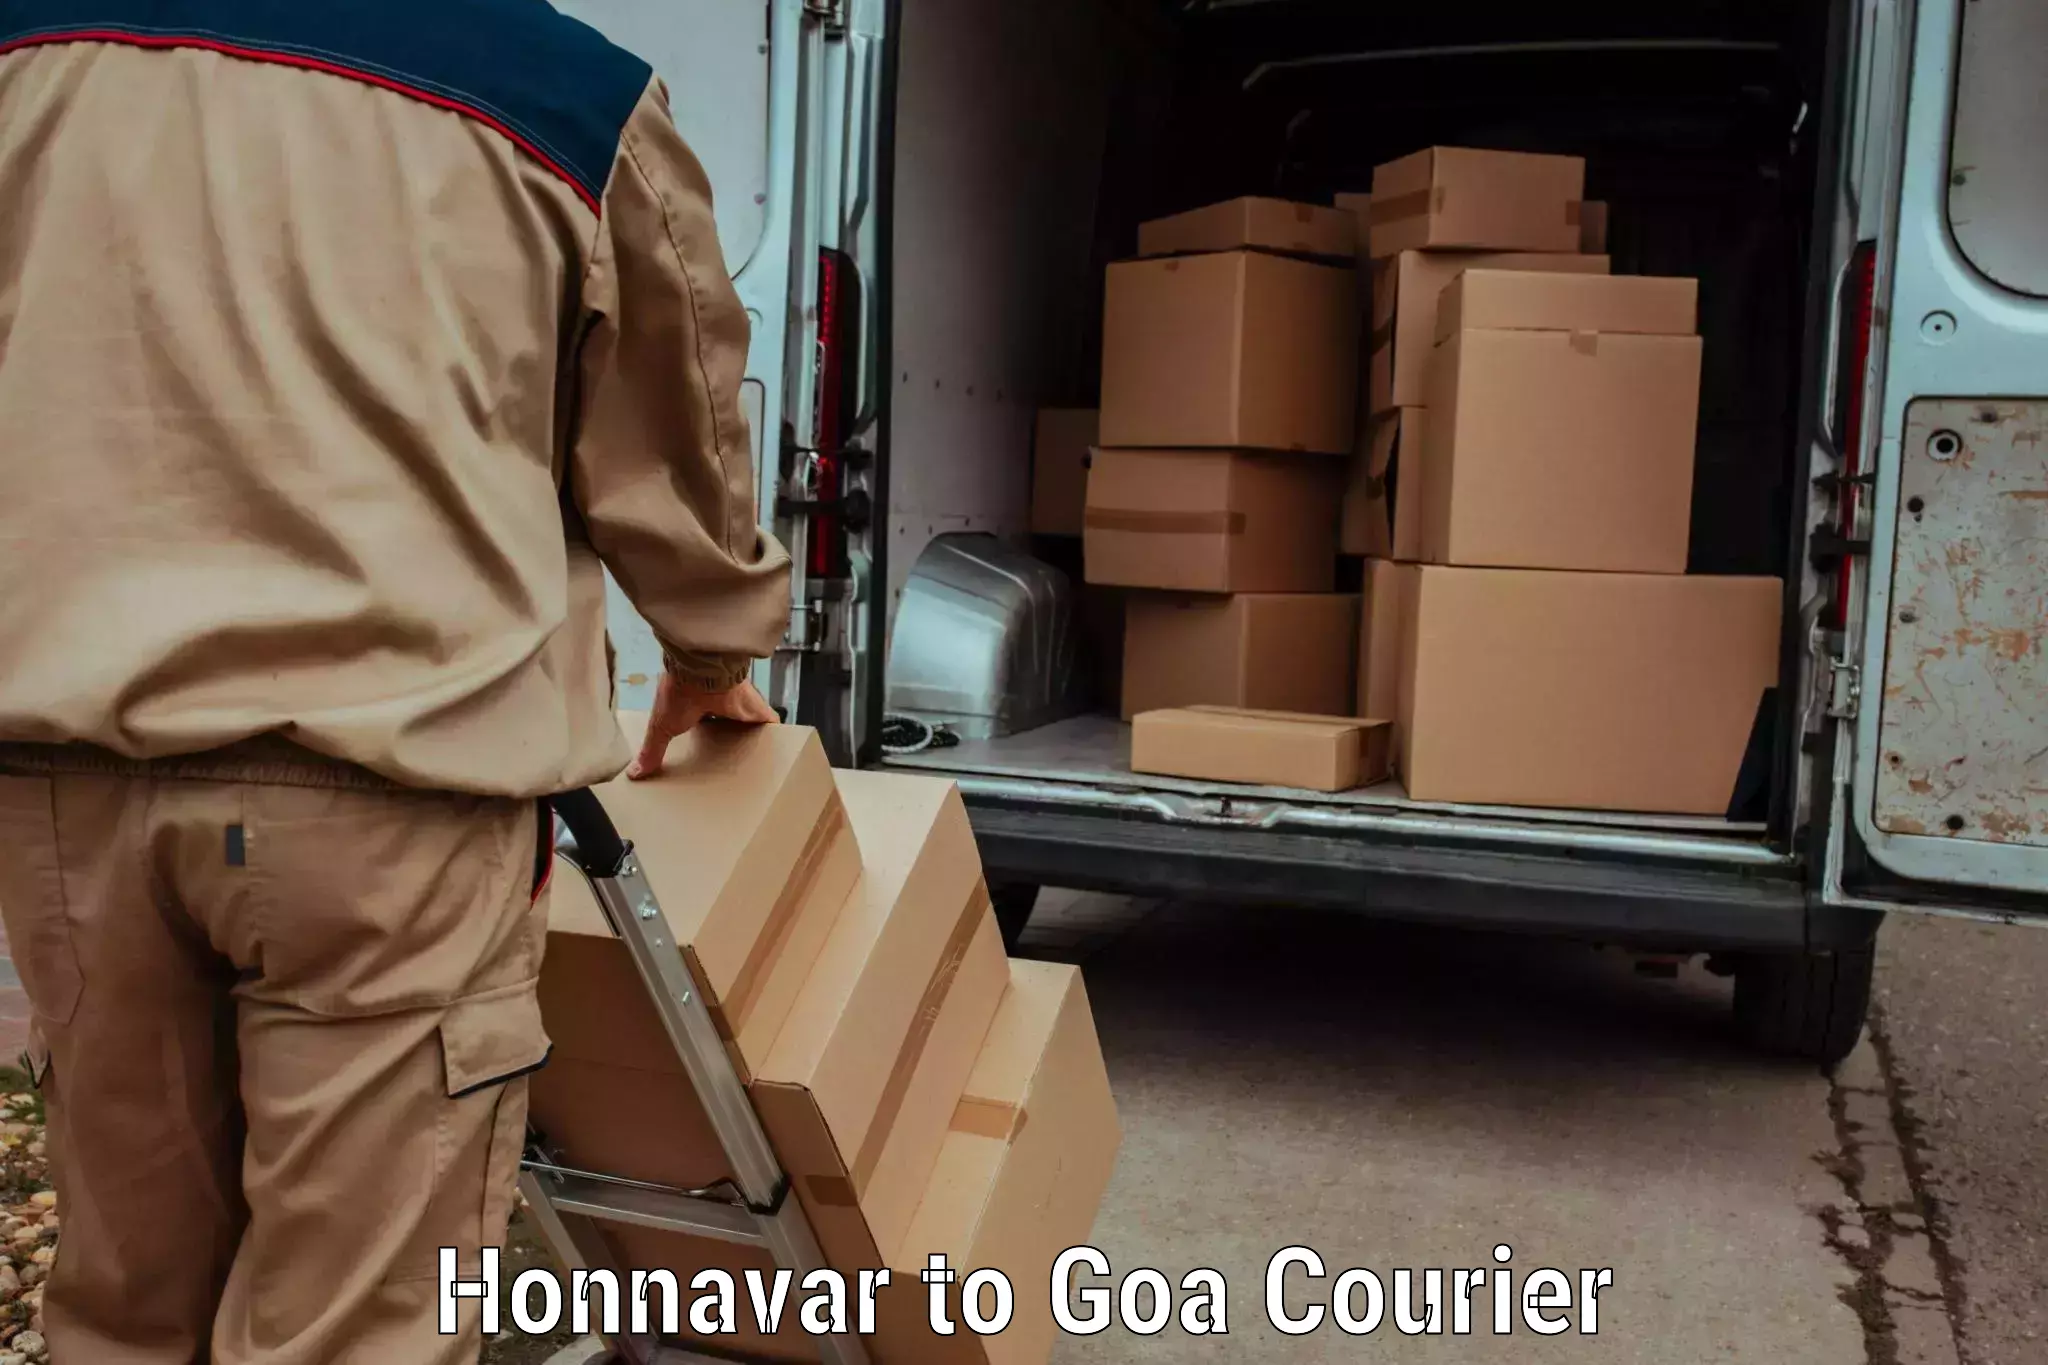 Courier dispatch services Honnavar to Ponda